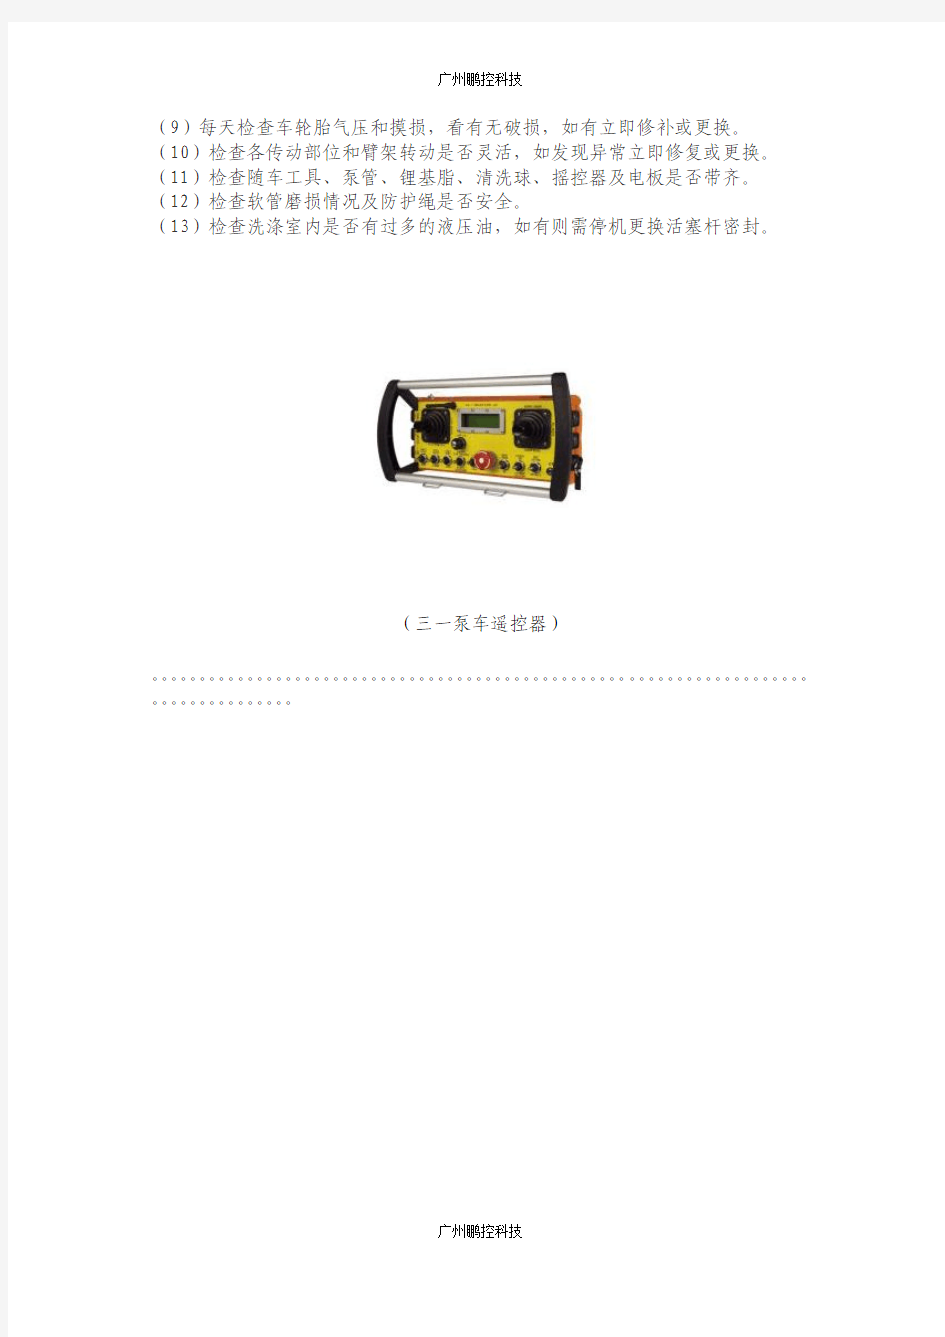 三一泵车遥控器泵车的保养和日常检查日志